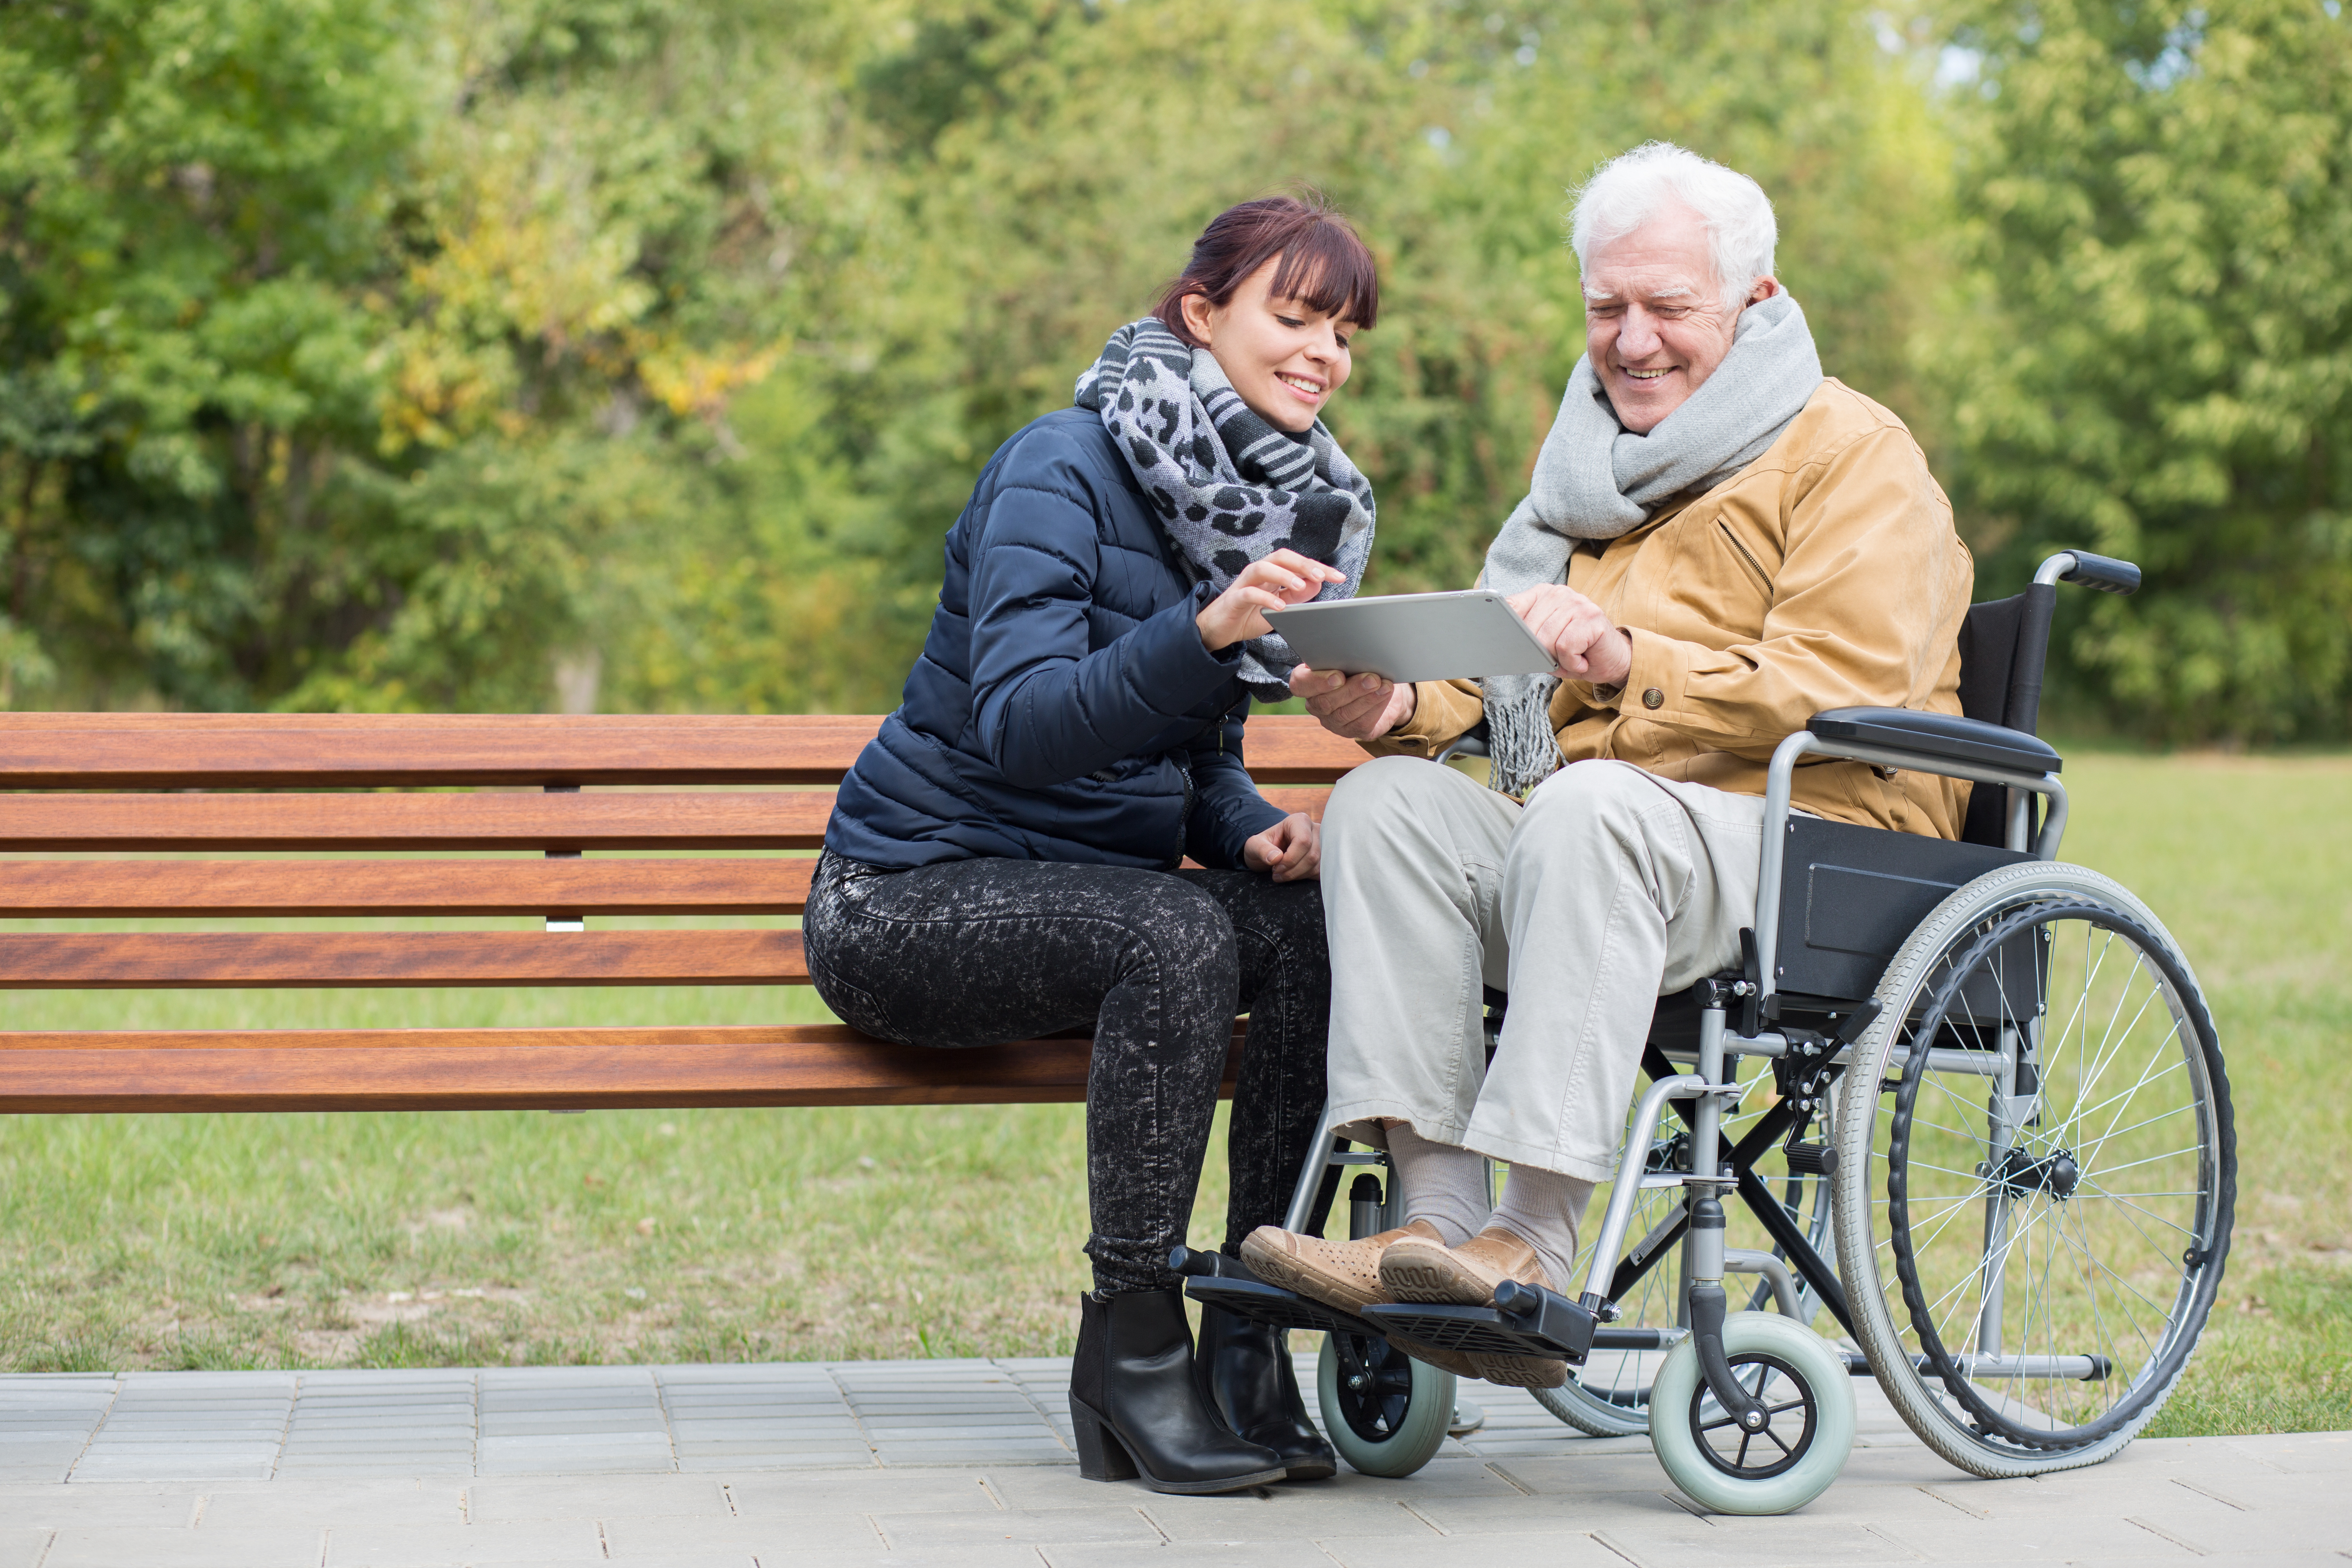 Пенсионное страхование инвалидов. Инвалиды в парке. Пенсионер по инвалидности. Пожилые с ограниченными возможностями. Инвалидность пожилых людей.